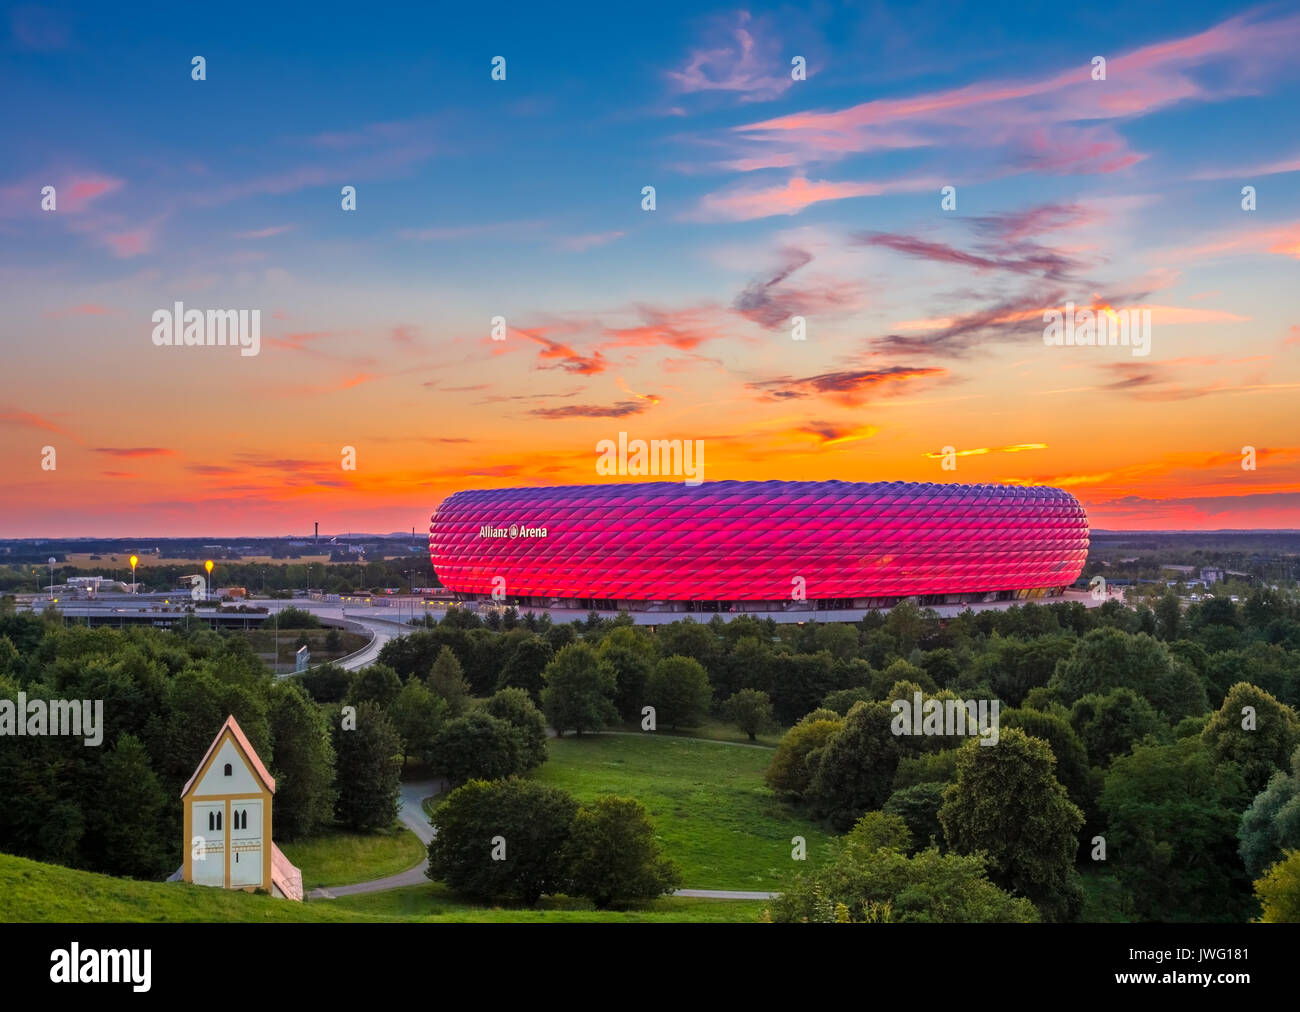 Deutschland, München, Fussballstadion, Allianz Arena,.erbaut 2002-2005, Architekten, Herzog und de Meuron, Covertex Aussenhülle Foto Stock